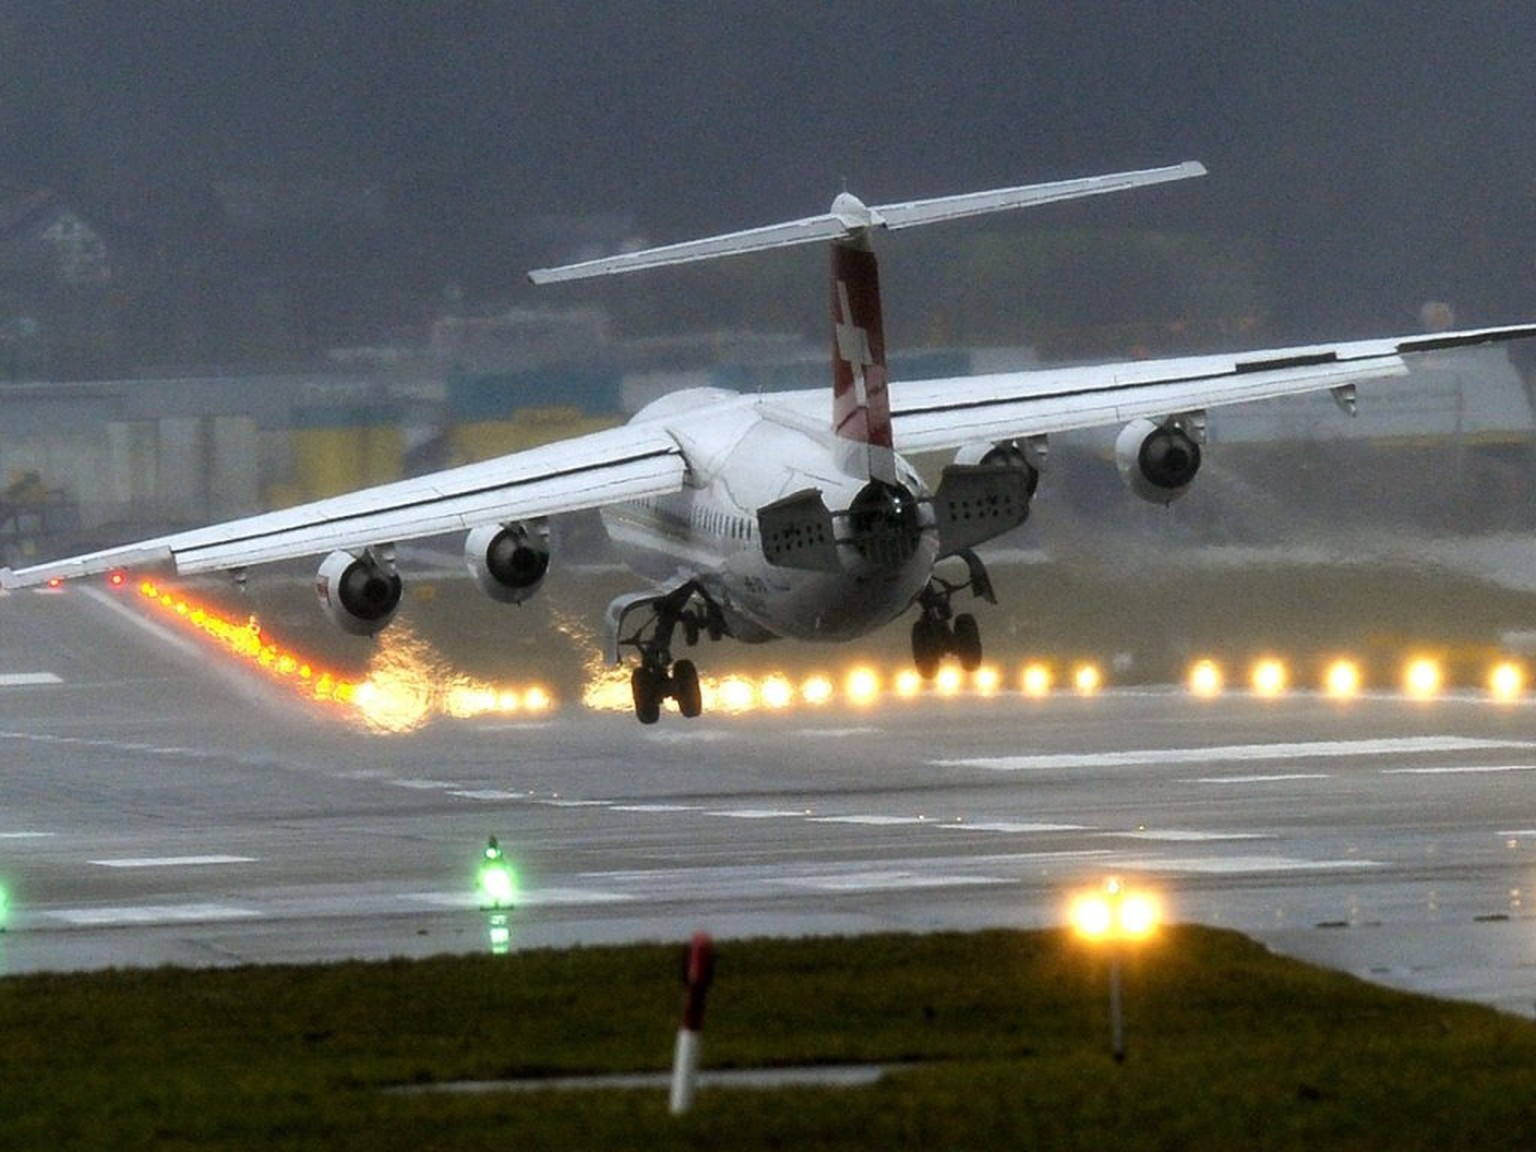 Ein Airbus der Swiss ist auf dem Flug nach Amsterdam von einem Blitz getroffen worden und ist aus Sicherheitsgründen nach Zürich zurückgekehrt. (Symbolbild)